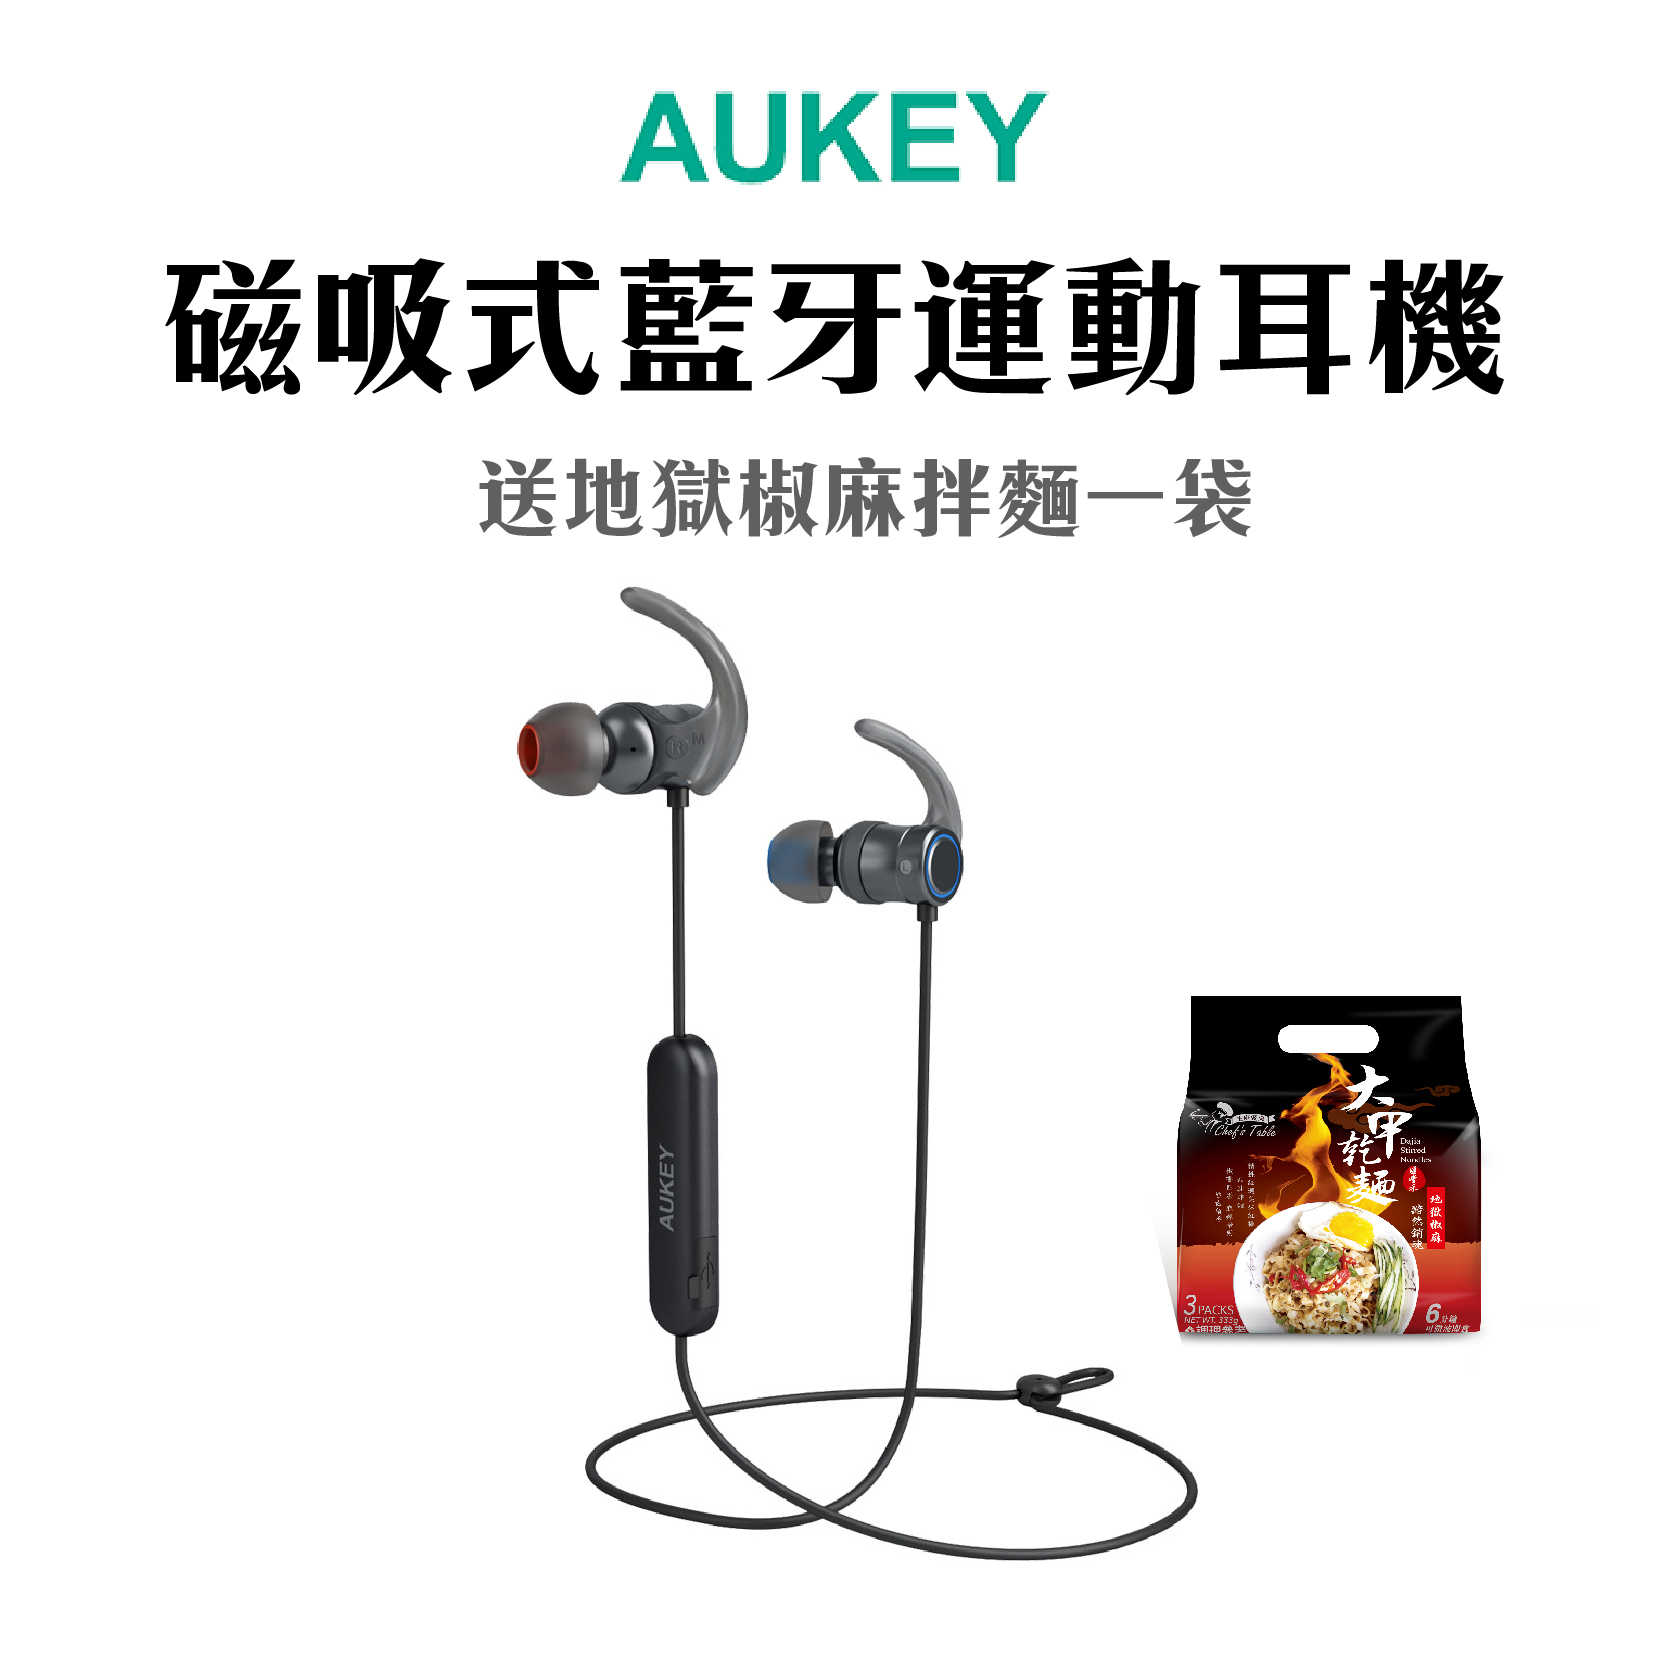 現貨 送大甲乾麵『AUKEY aptX磁吸式藍牙運動耳機』 EP-B67 防水 EQ可調 慢跑 運動必備